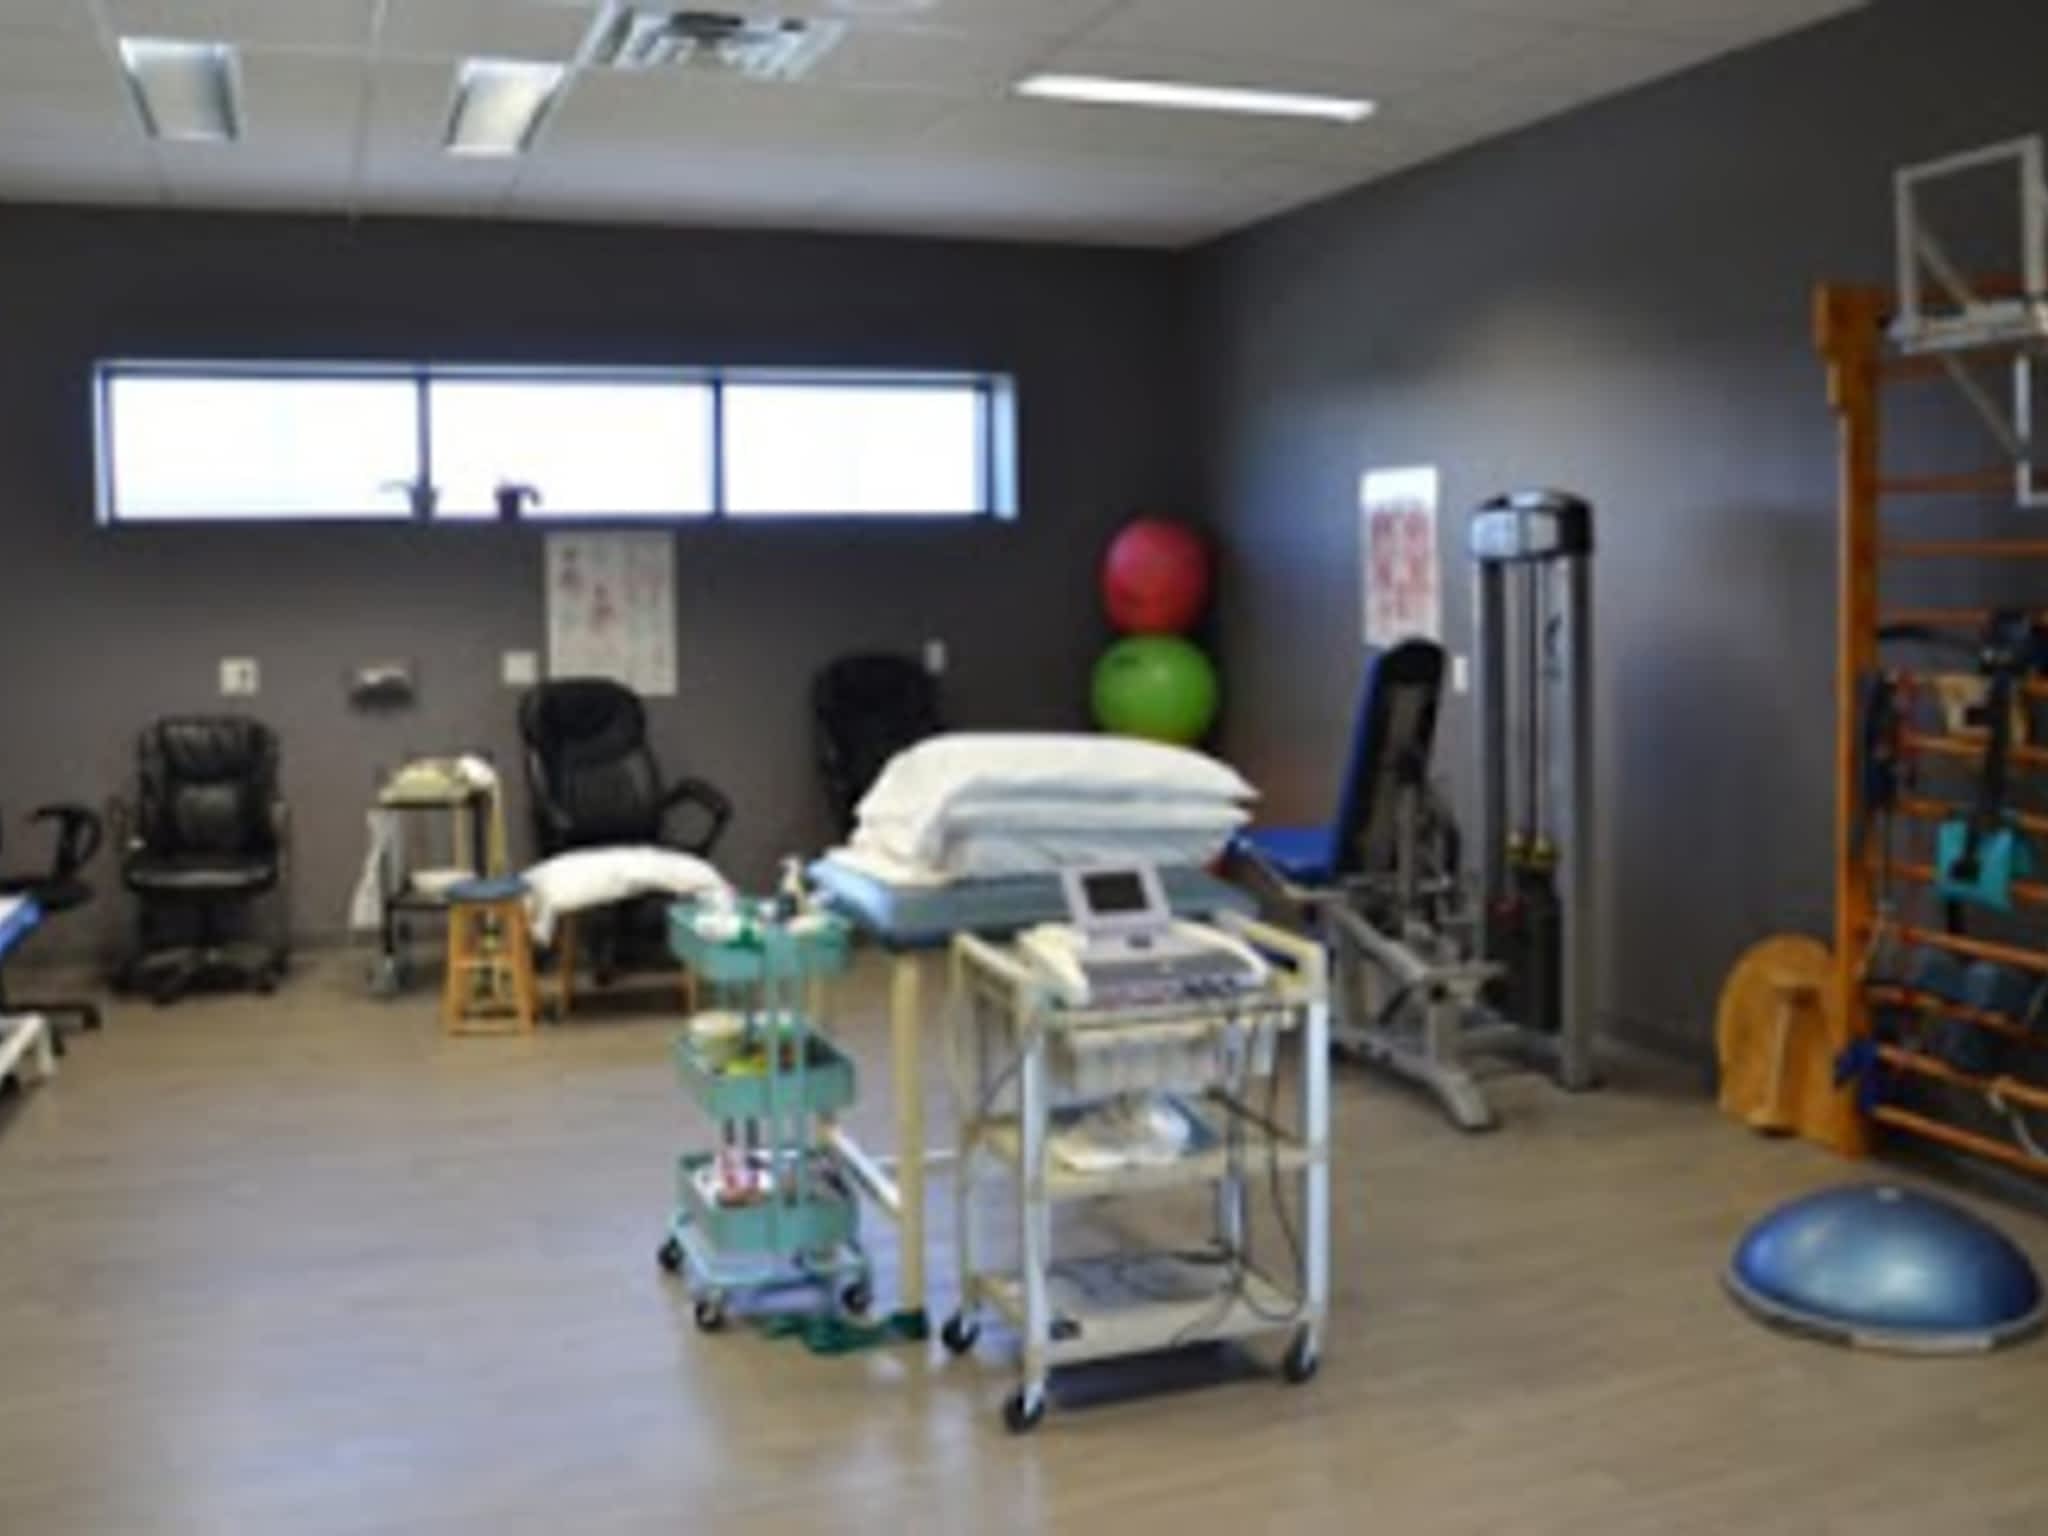 photo Clinique De Physiothérapie Joliette